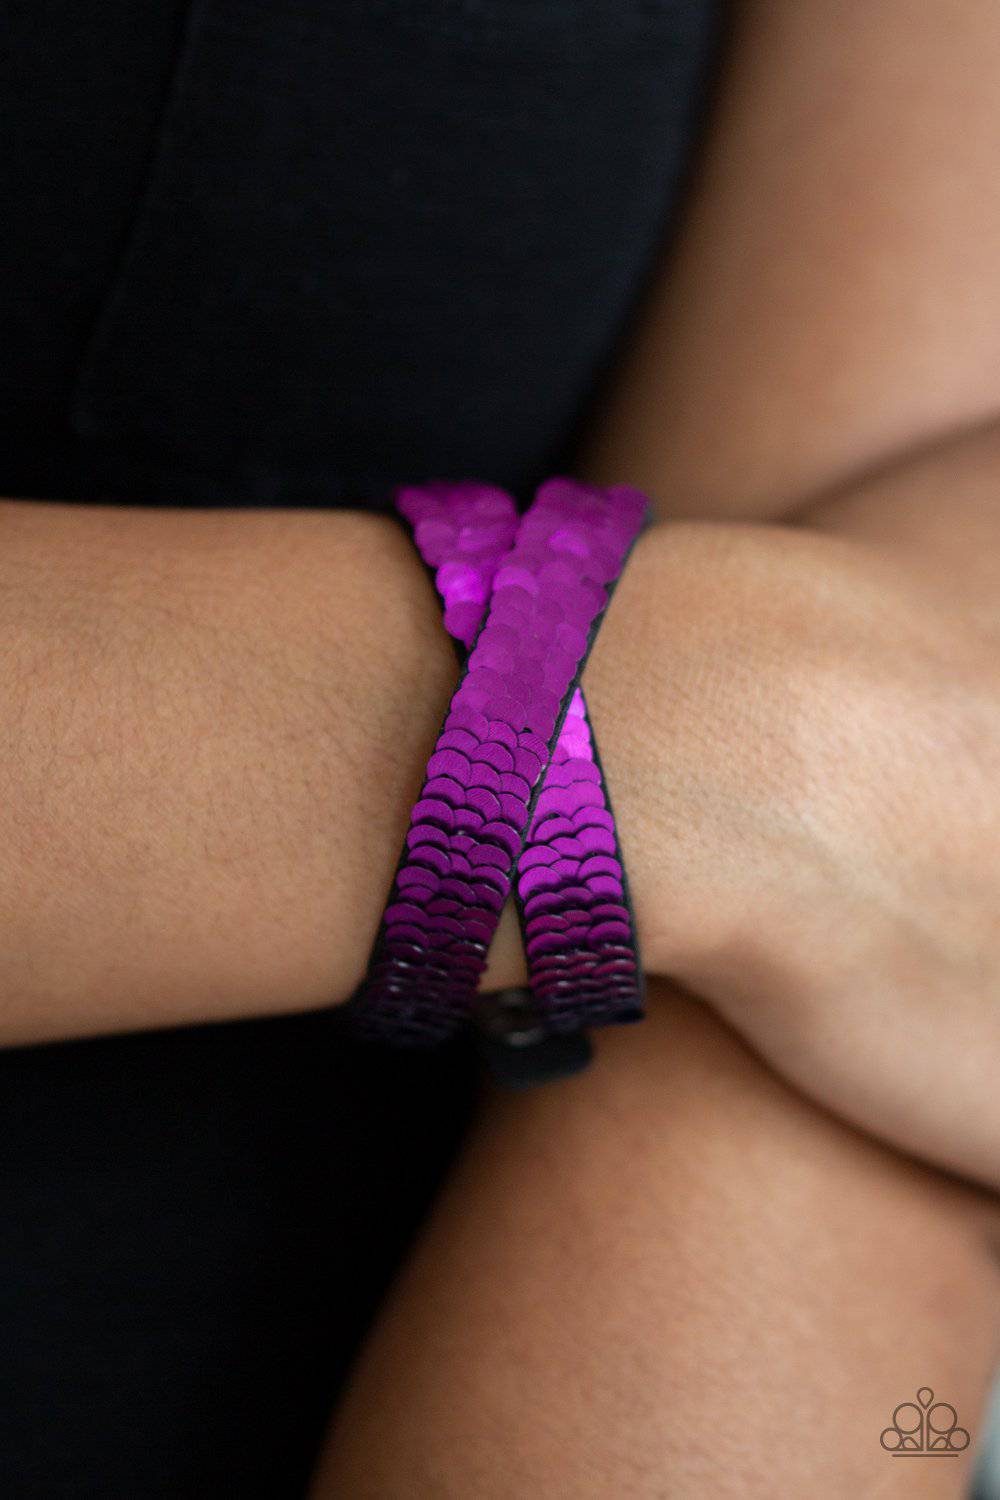 Under The SEQUINS - Purple & Blue Wrap Bracelet - Paparazzi Accessories - GlaMarous Titi Jewels